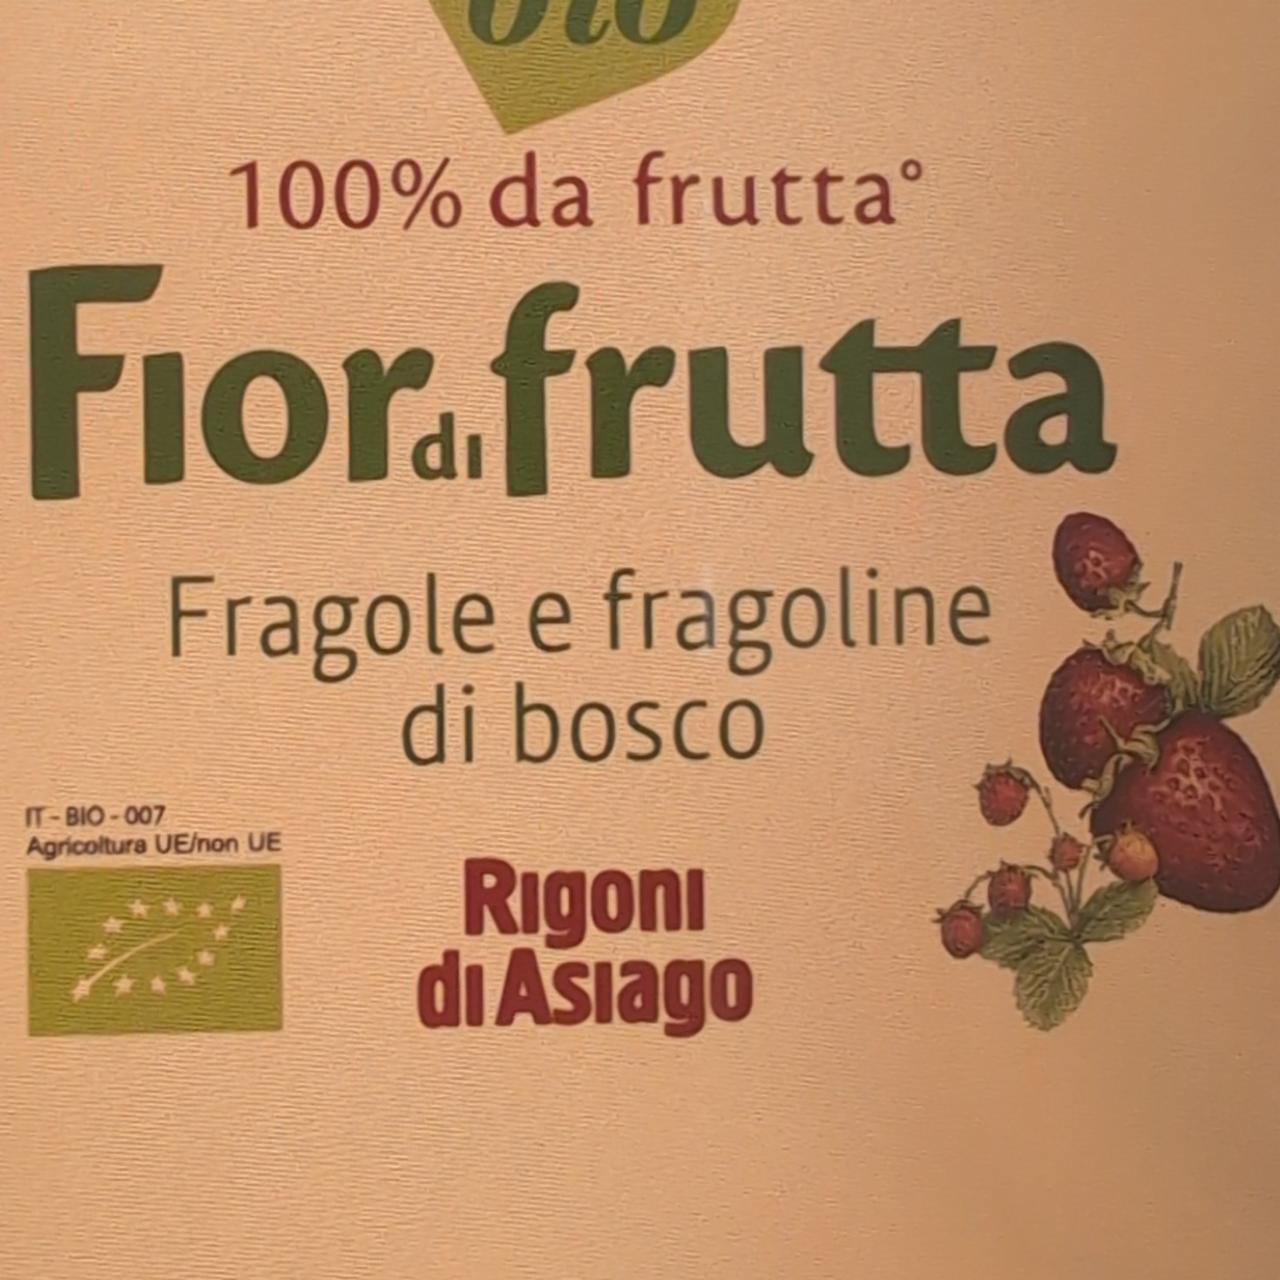 Фото - Fior di frutta fragole e fragoline di bosco Rigoni di Asiago